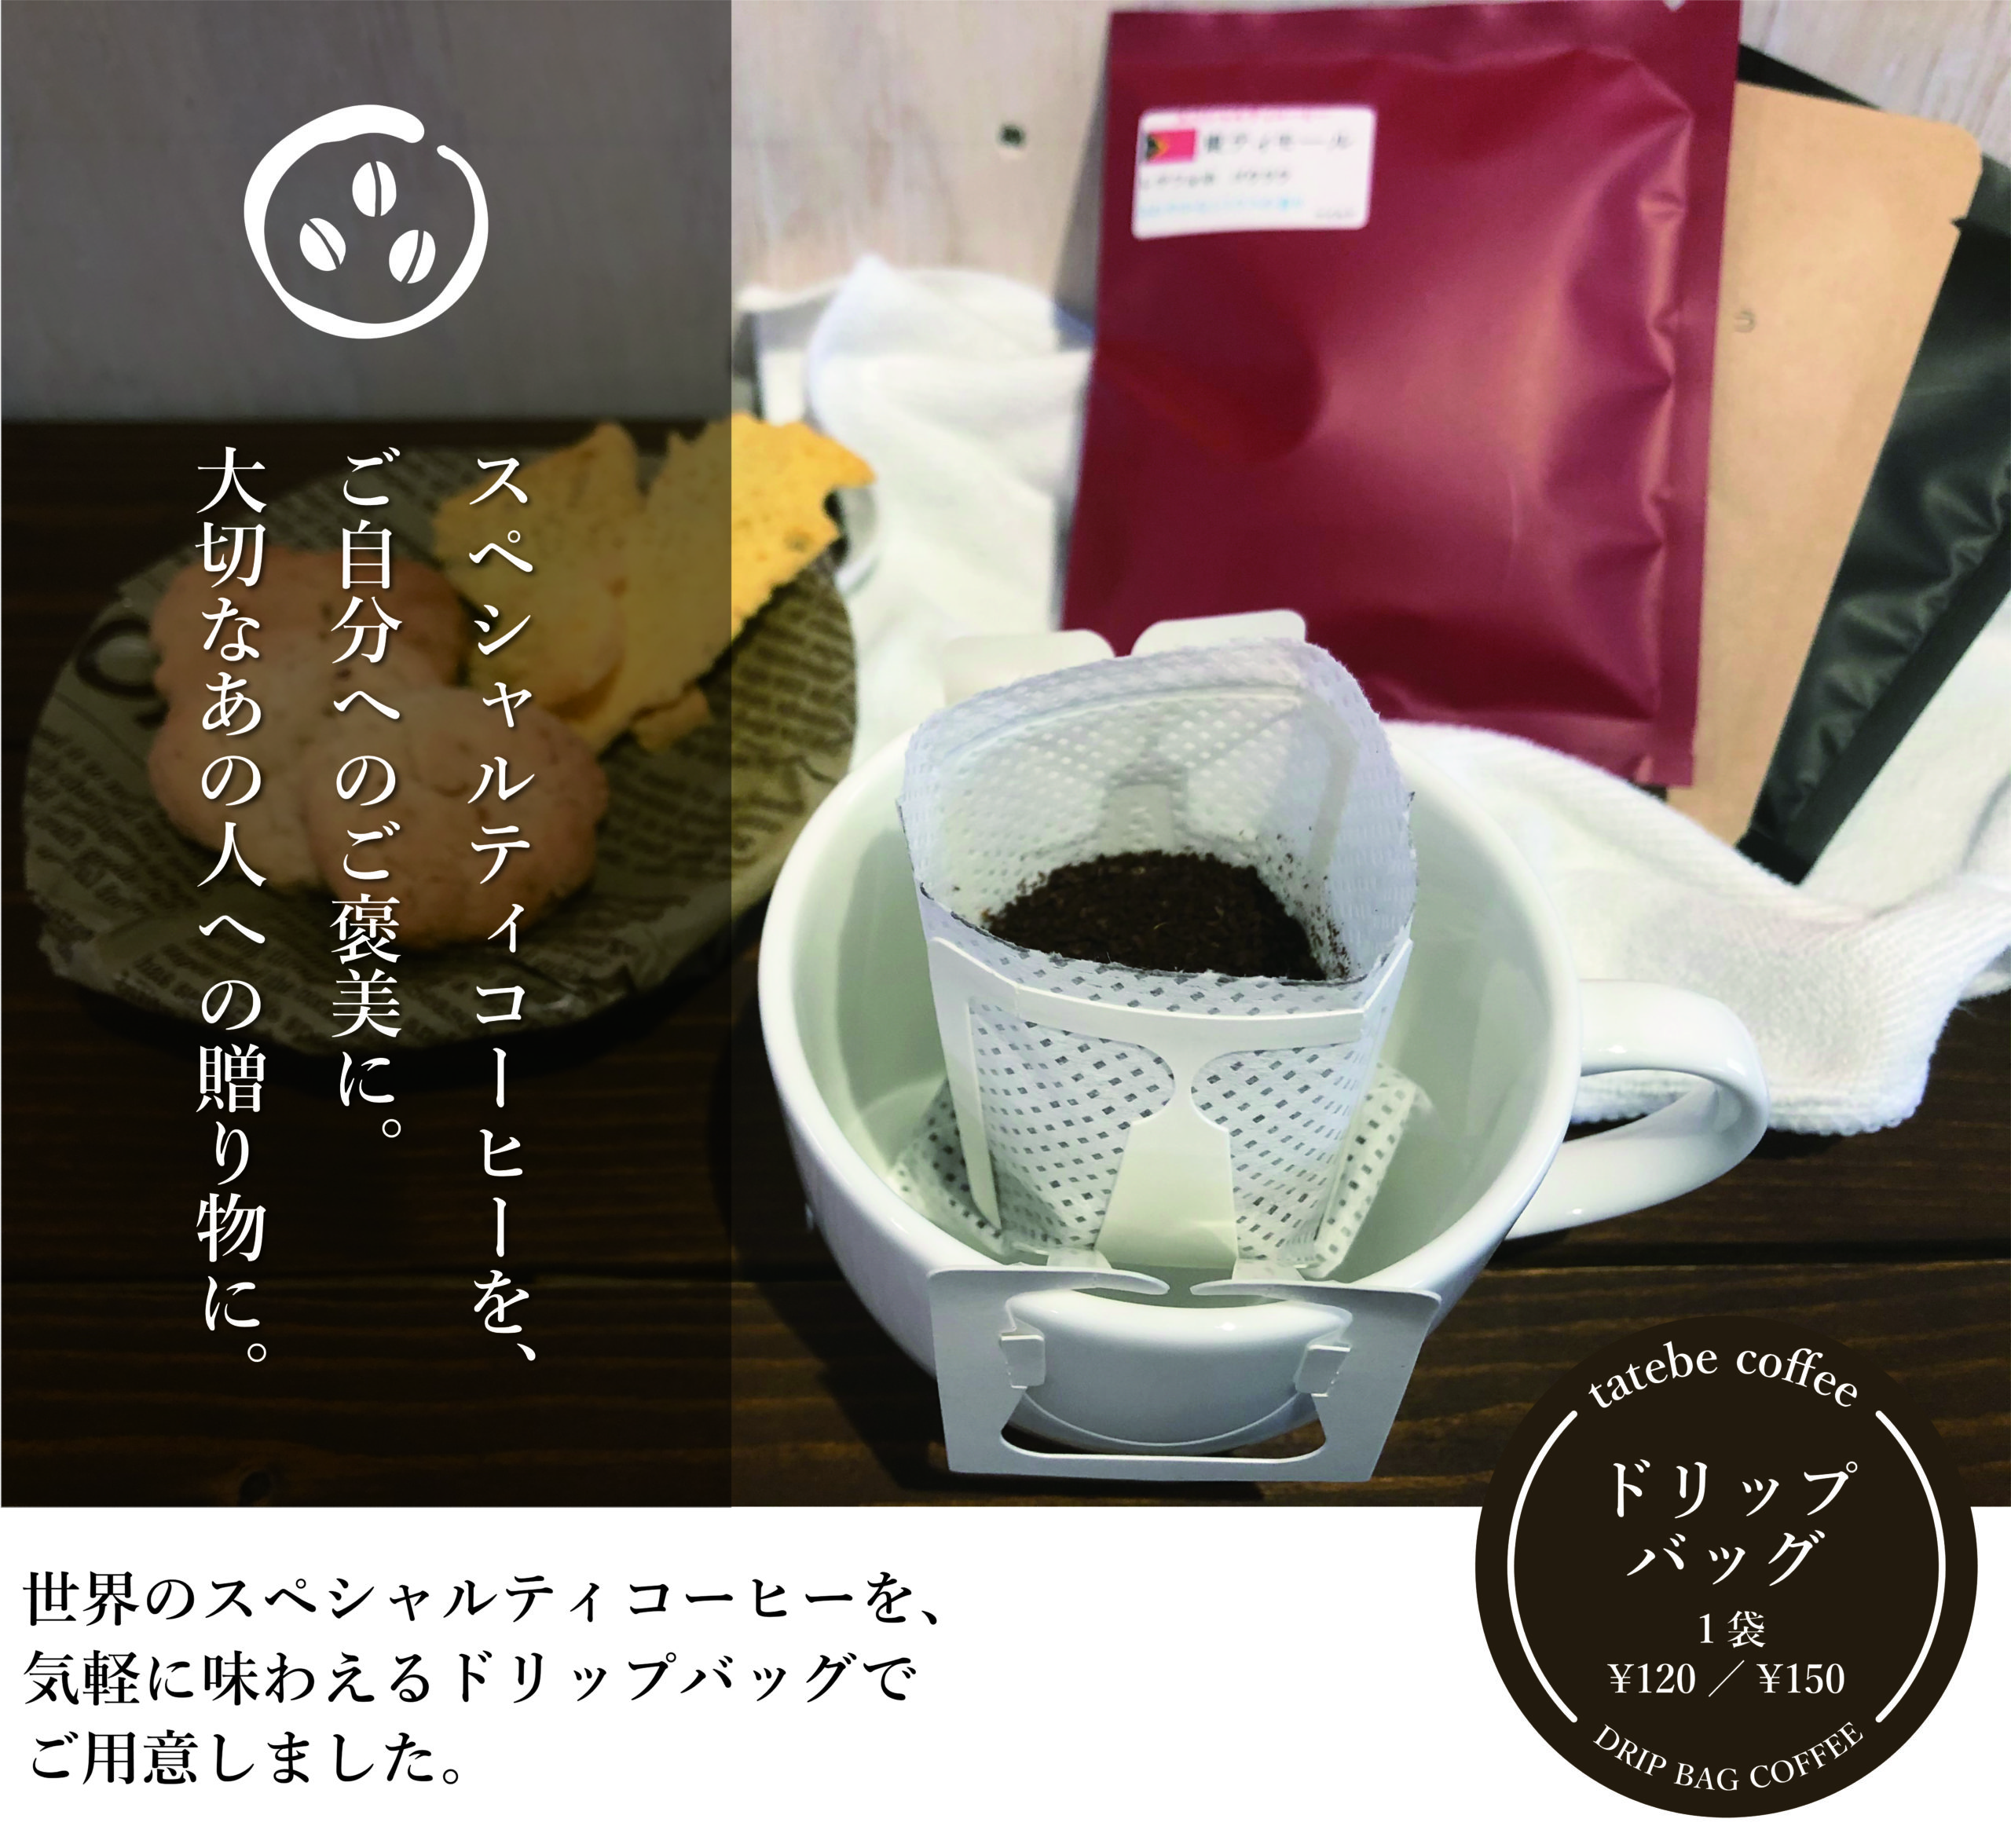 【公式HP】タテベコーヒー ロースターズ